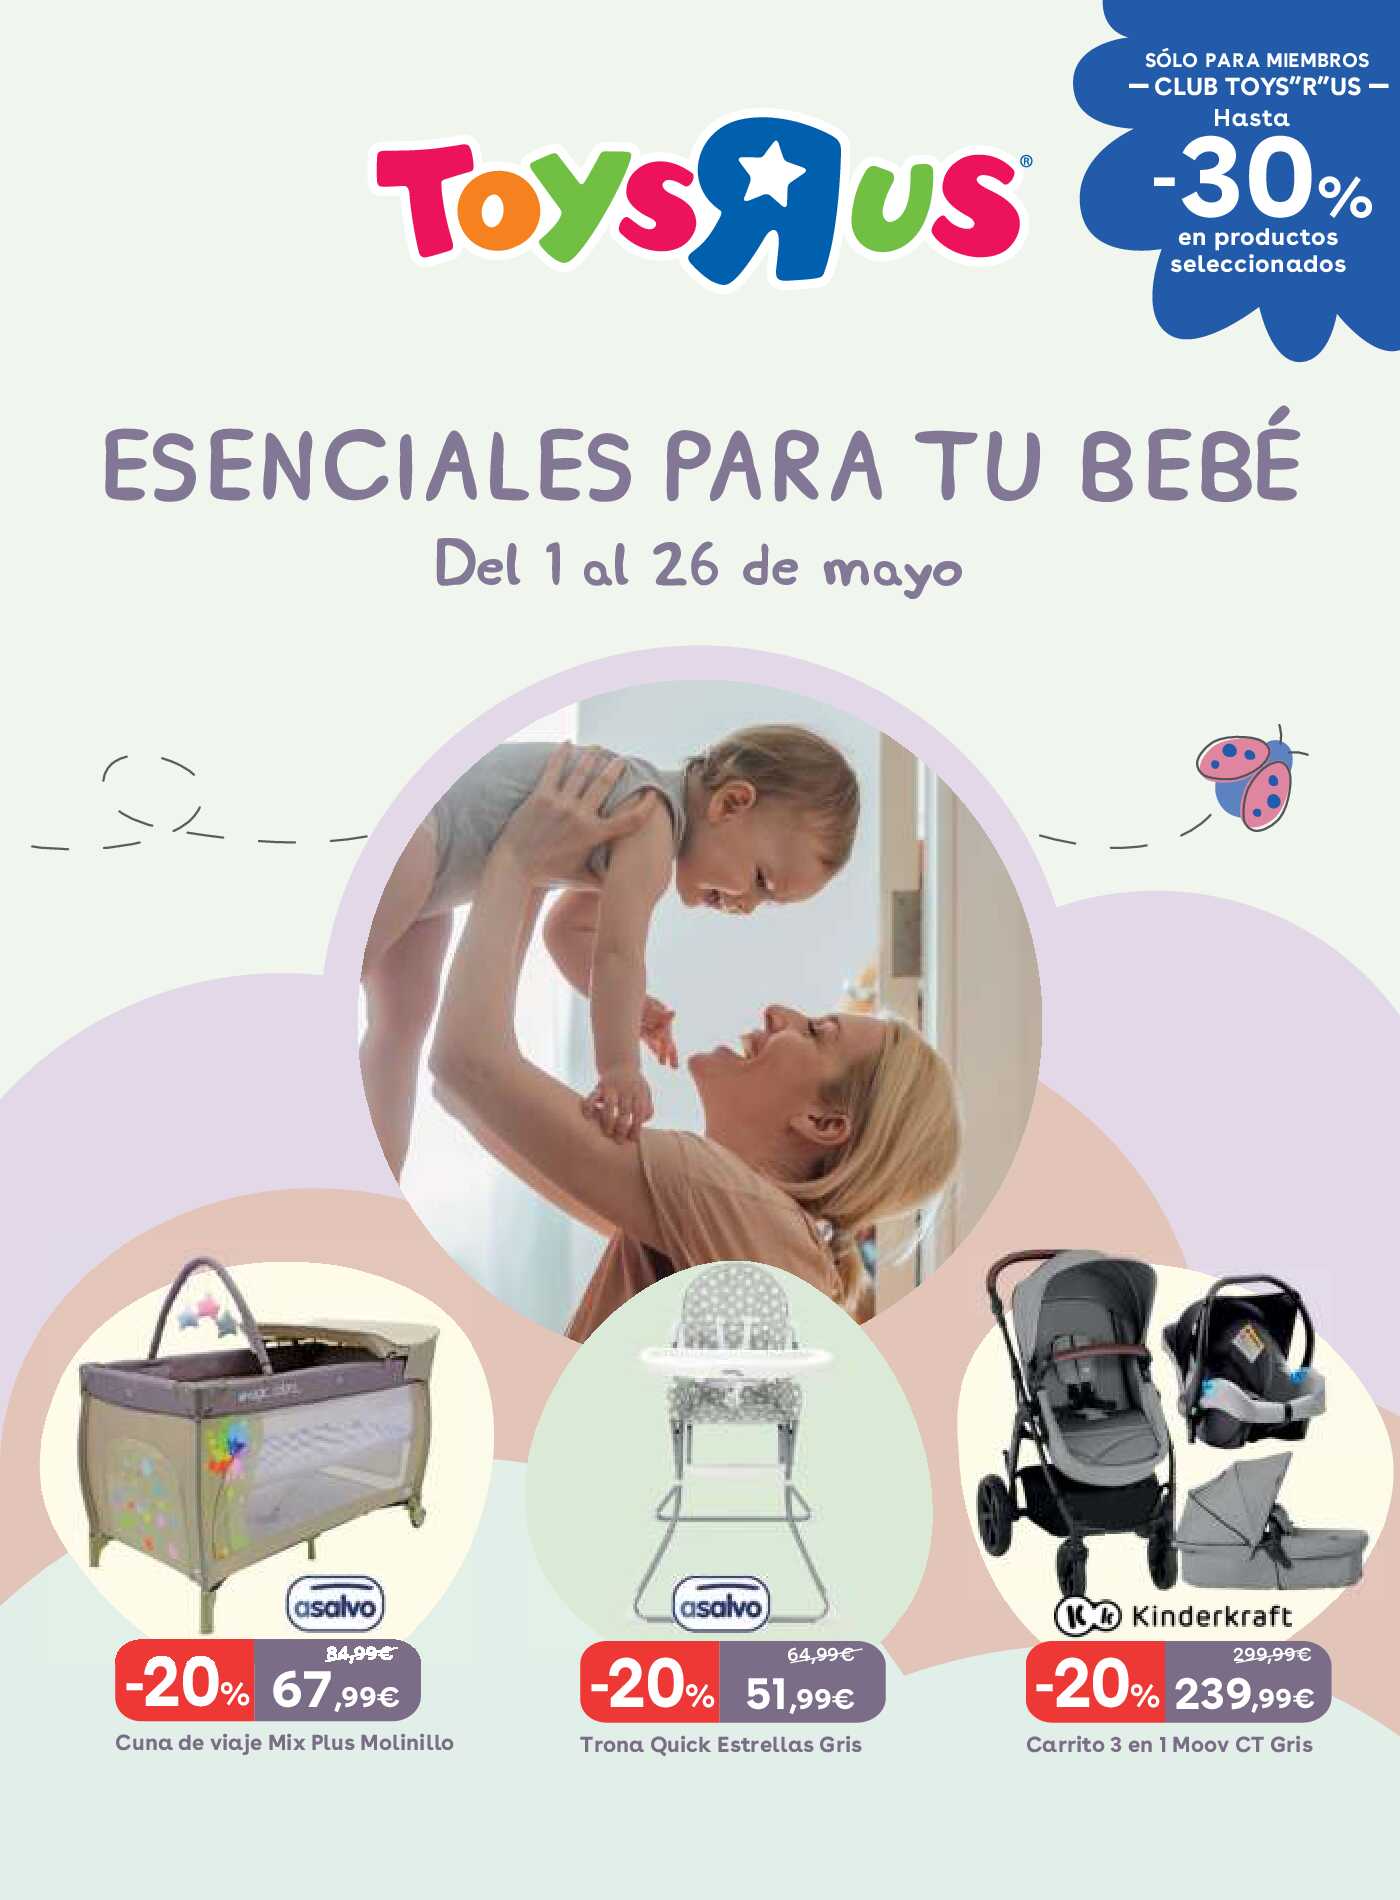 Esenciales para tu bebé Toys R Us. Página 01